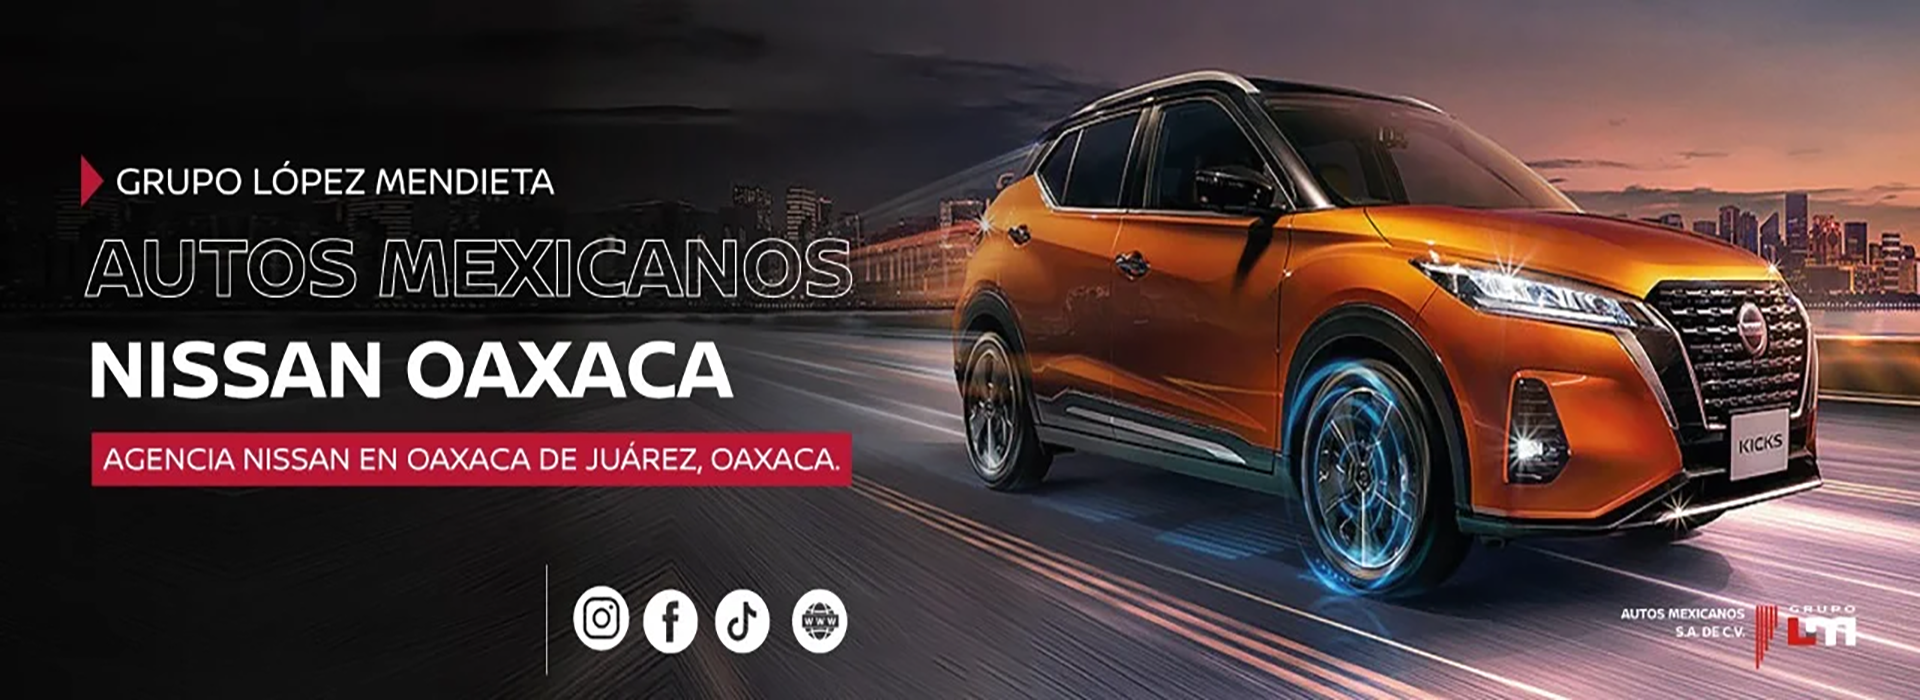 Nissan Oaxaca